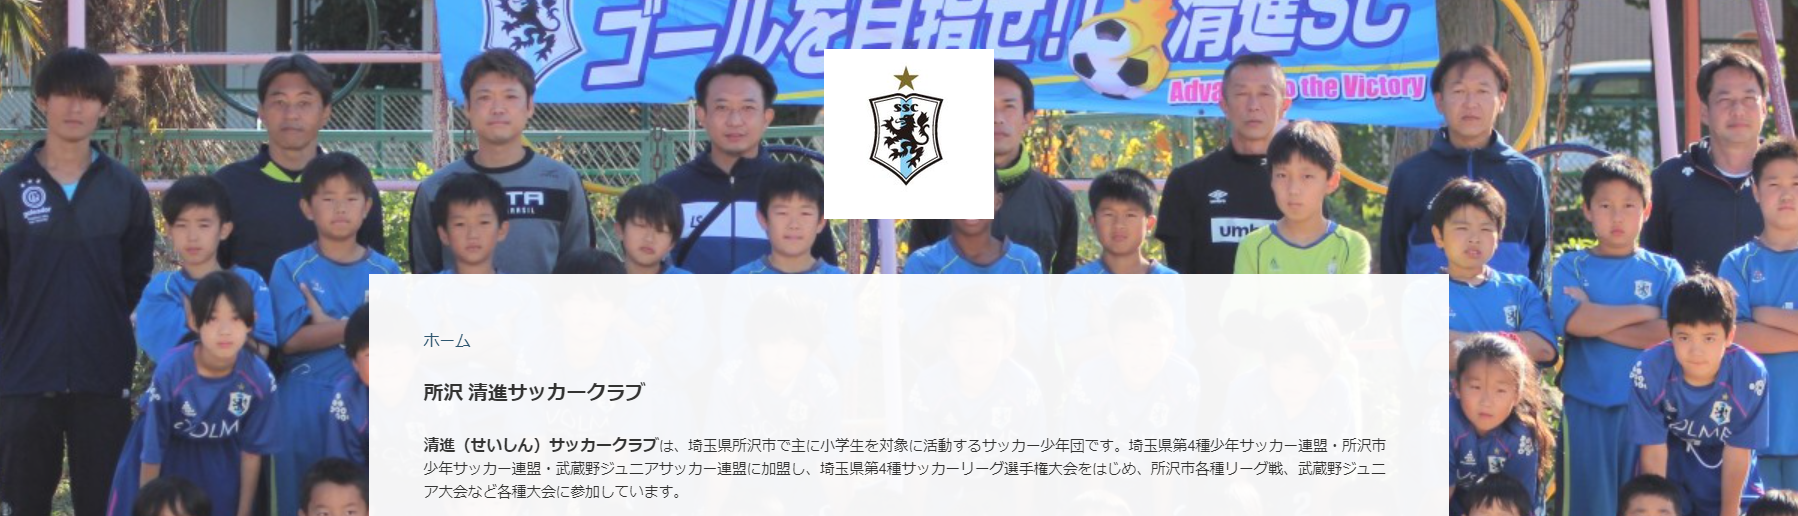 所沢 清進サッカークラブ